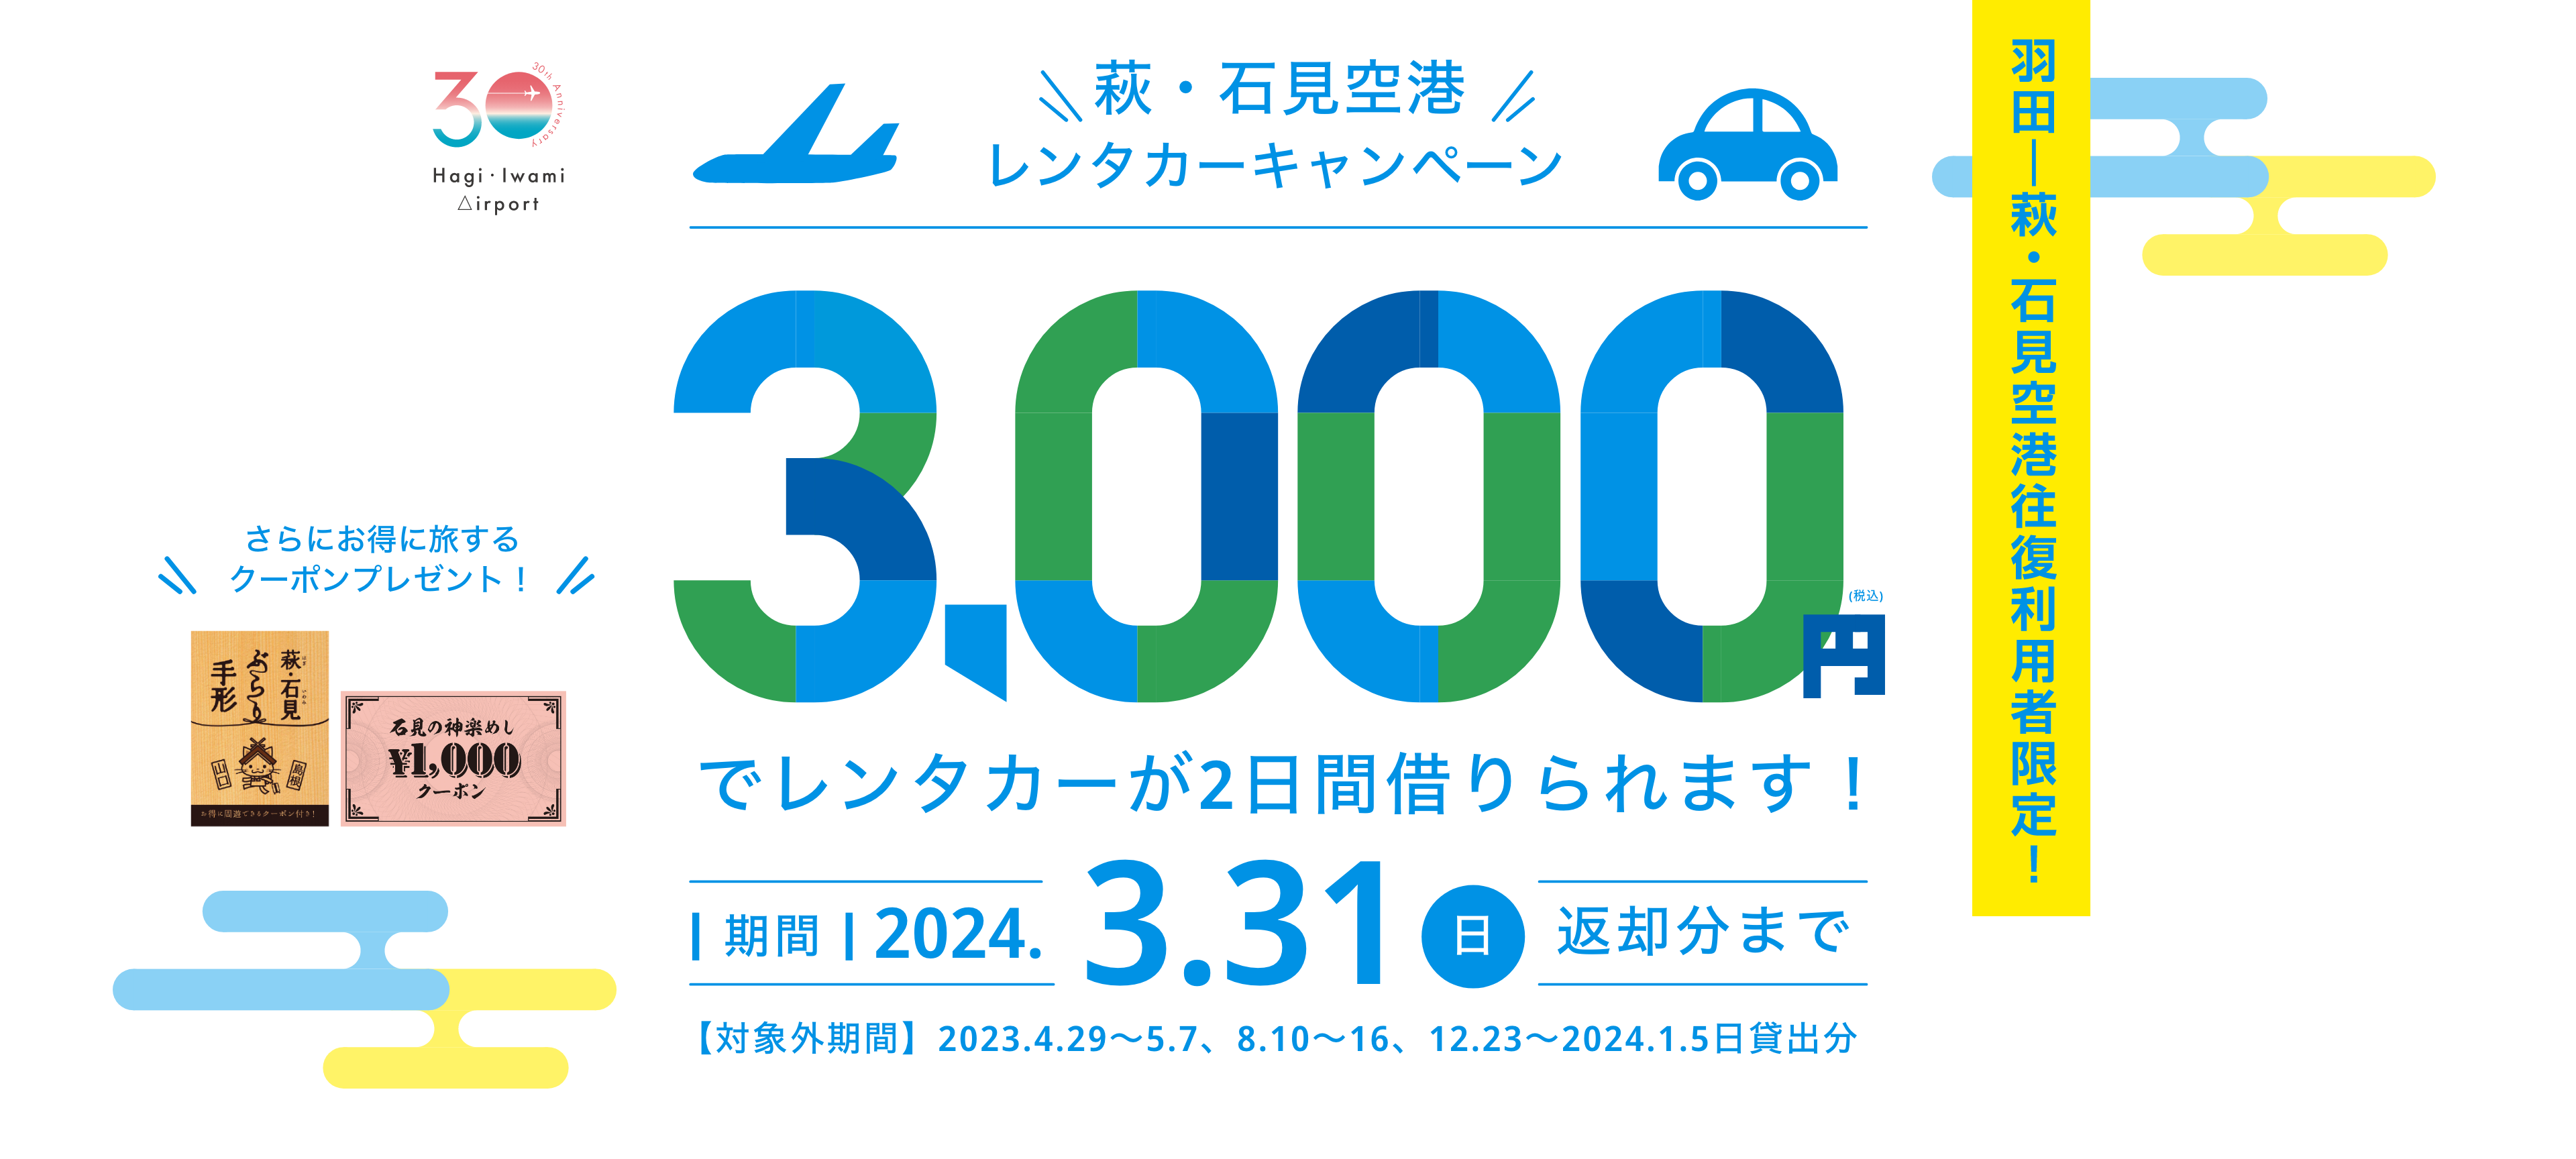 萩・石見空港レンタカーキャンペーン 3,000円でレンタカーが2日間借りられます！